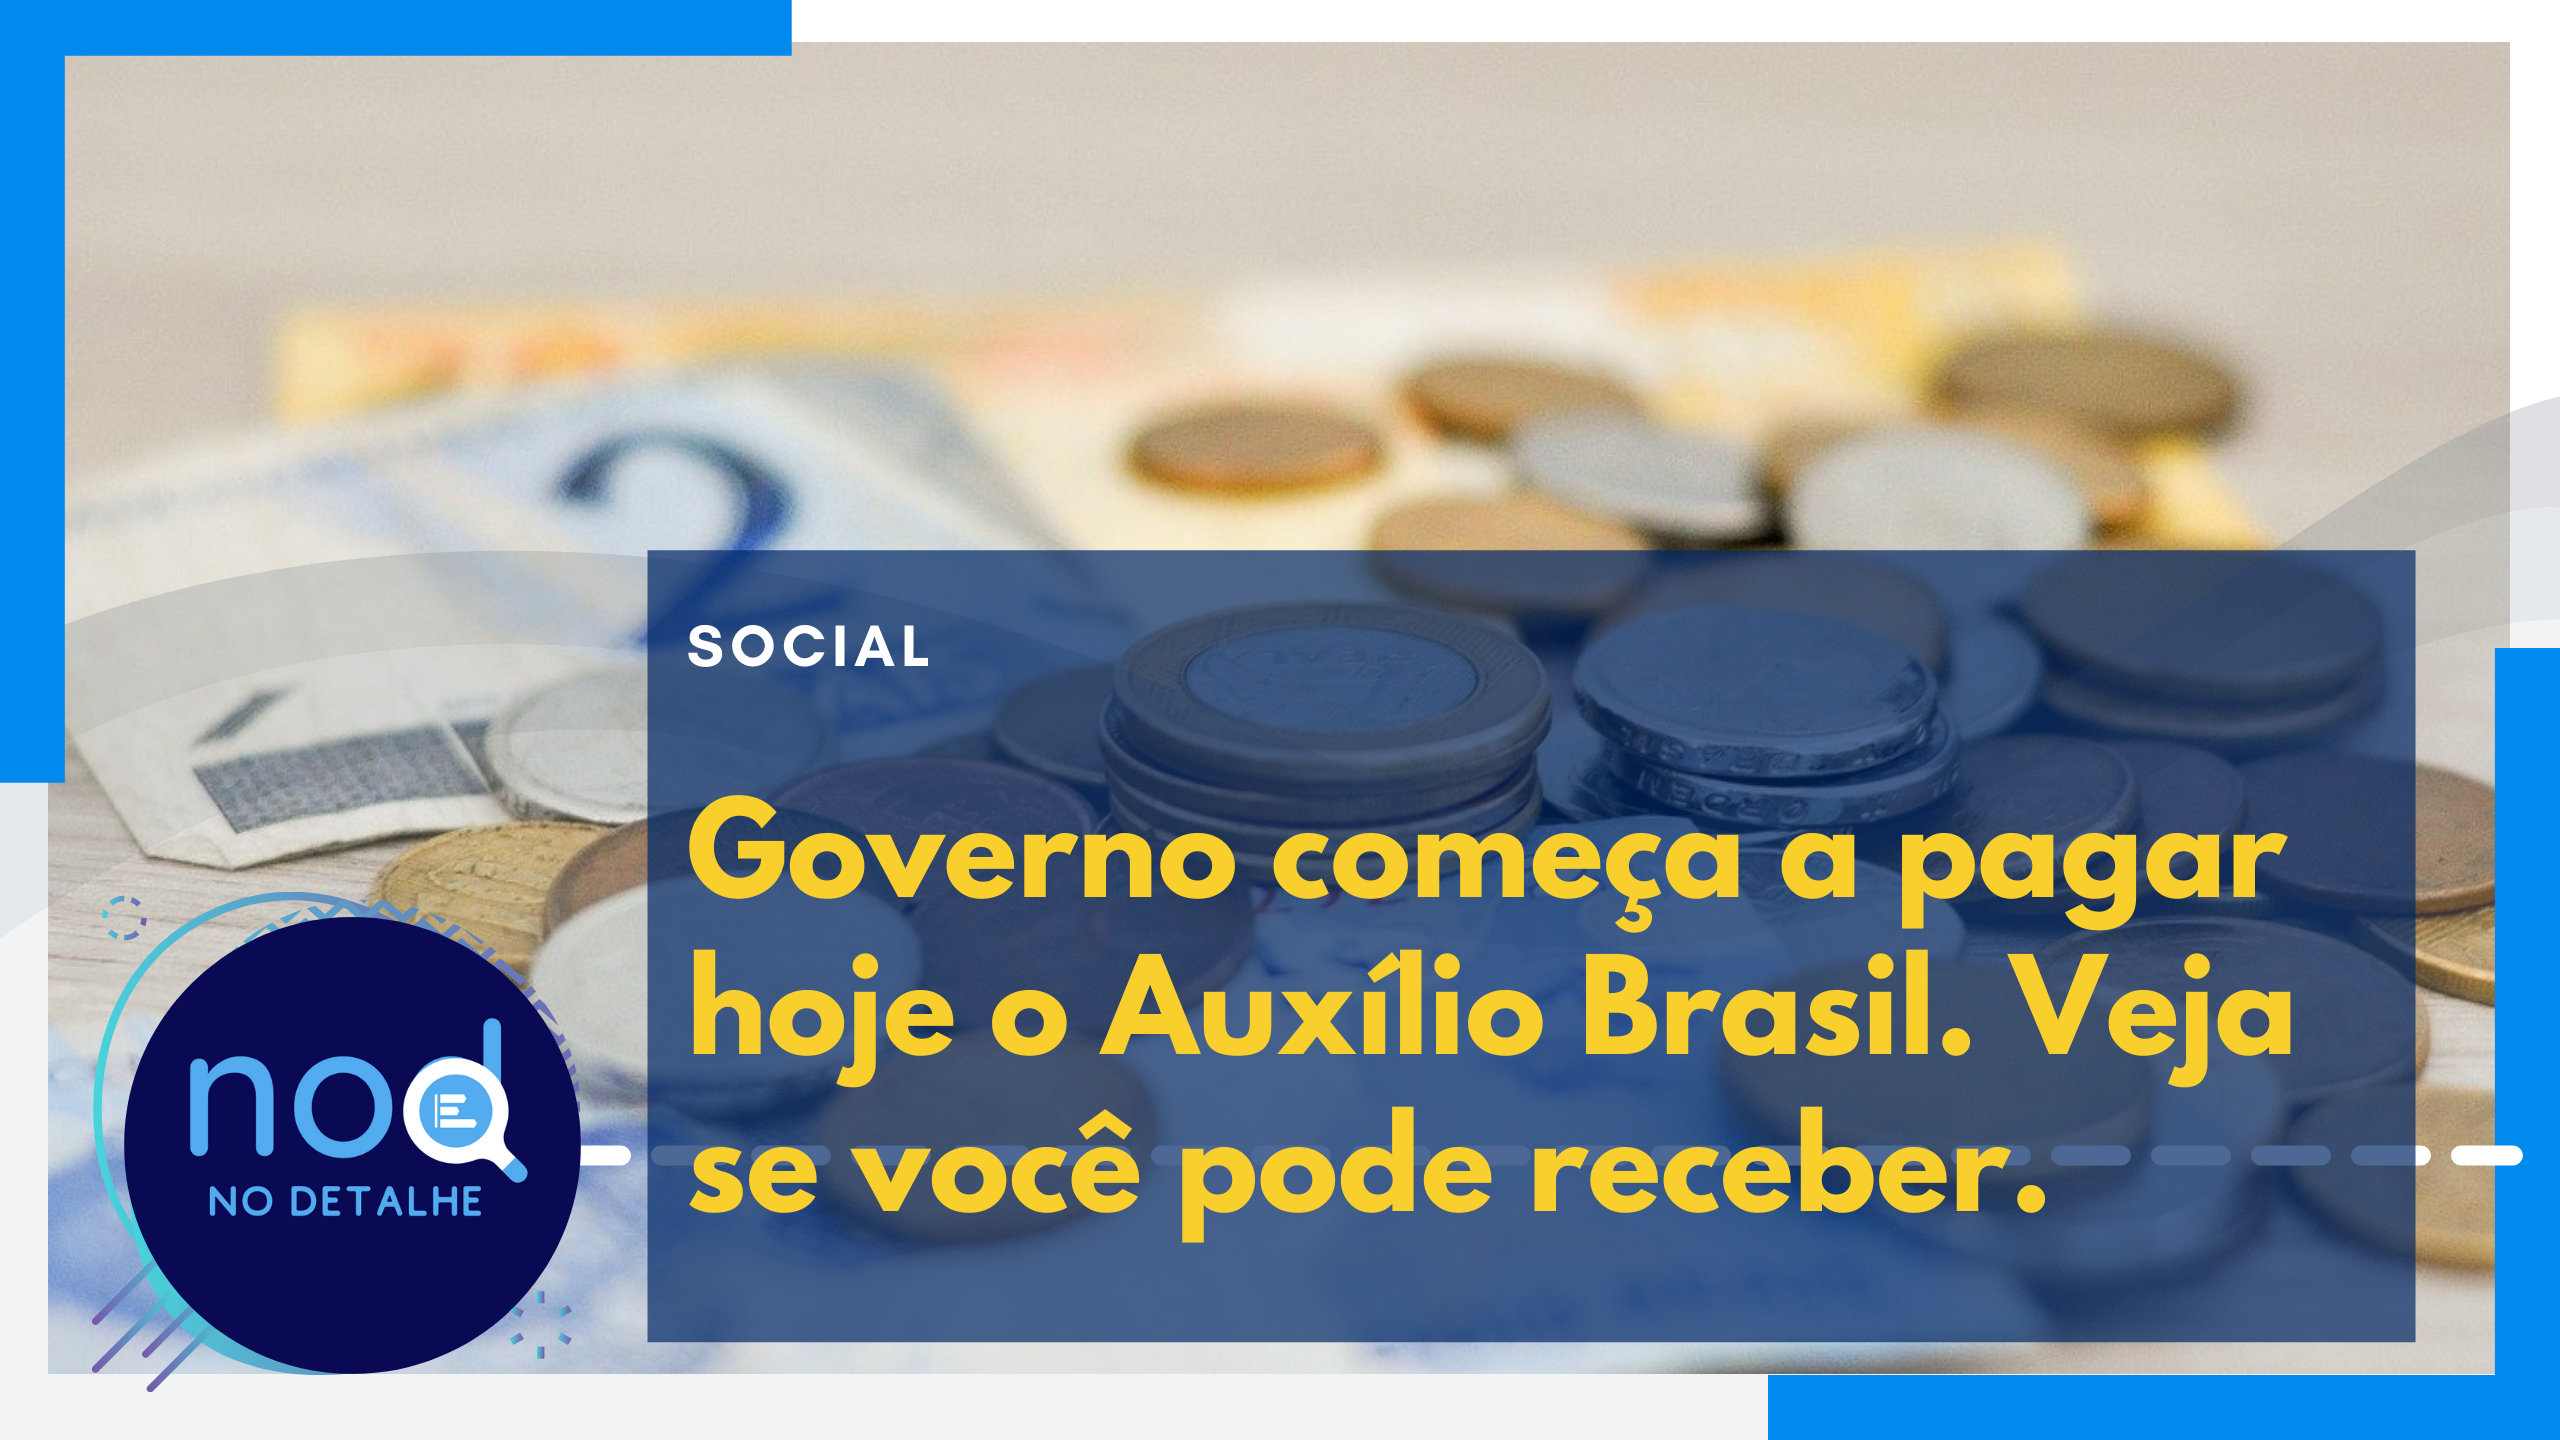 Auxílio Brasil: Governo começa a pagar hoje. Veja como vai funcionar